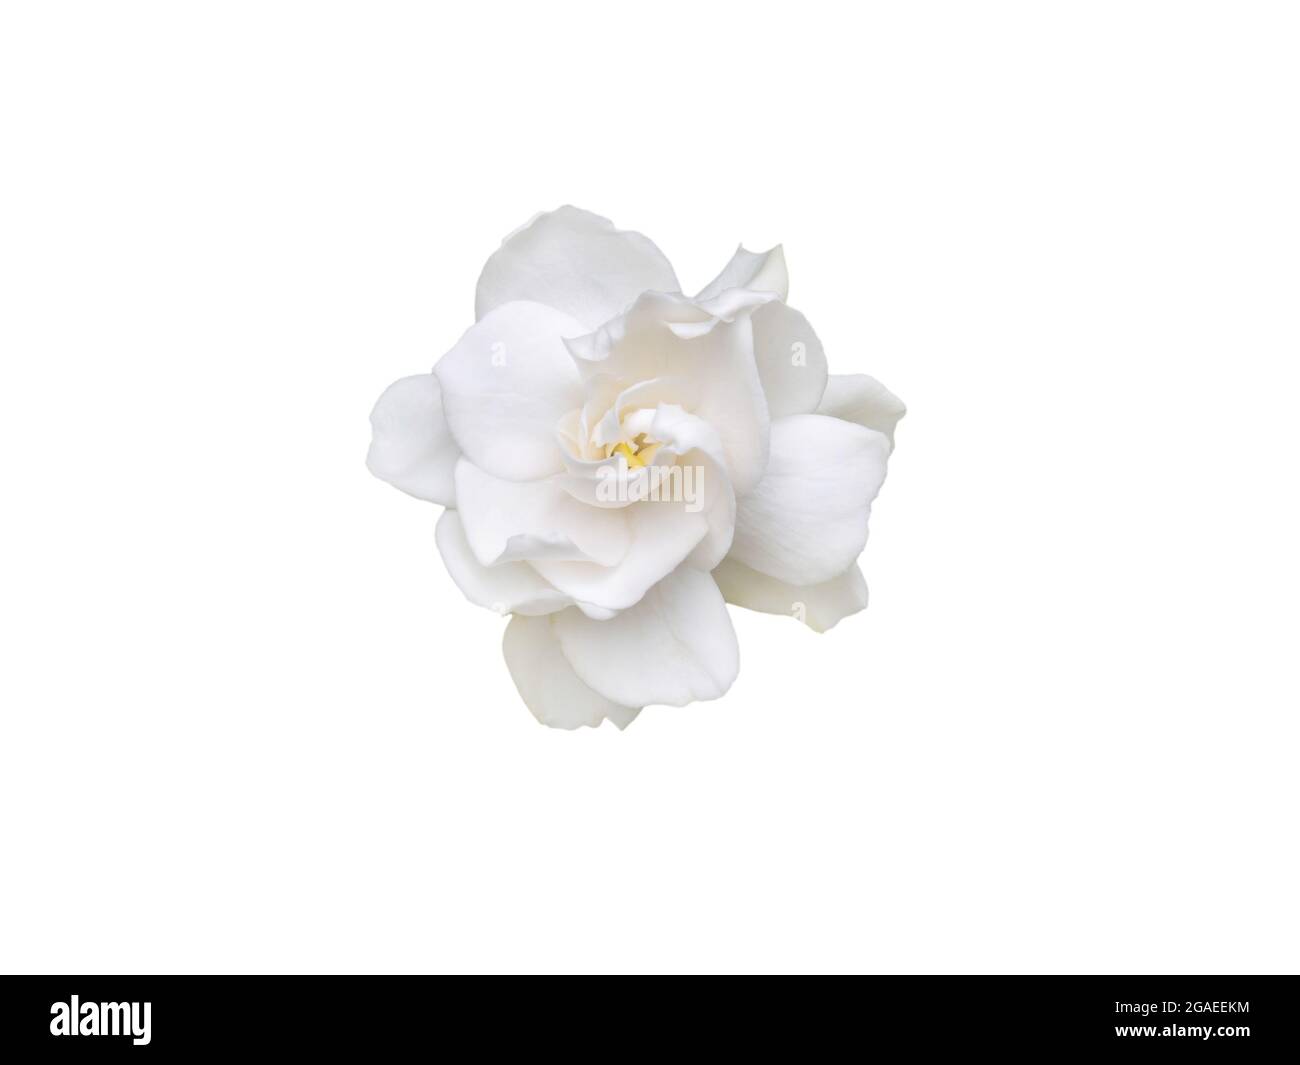 Gardenia jasminoides fragrant flower top view isolated on white Stock Photo